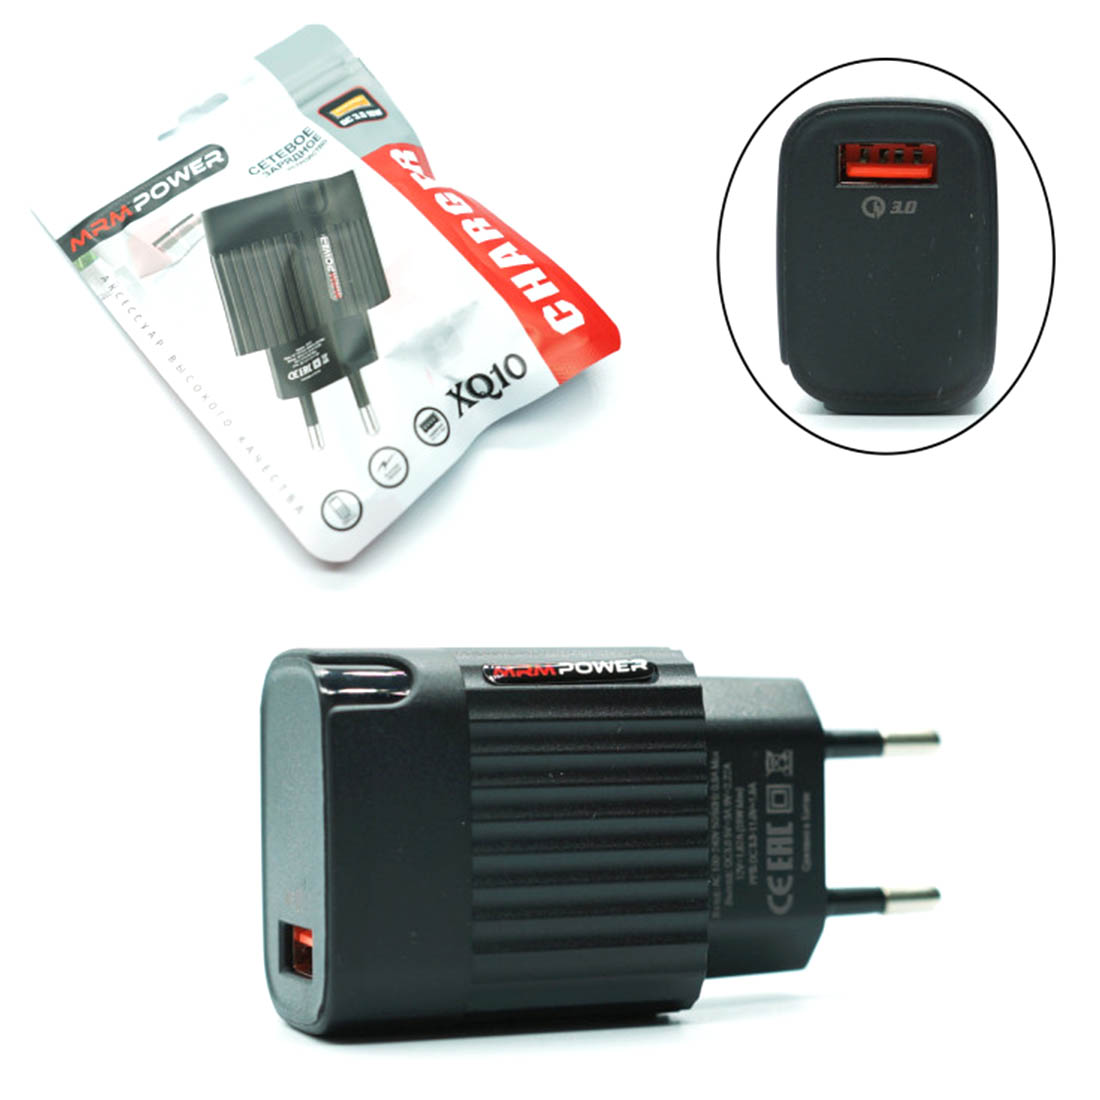 СЗУ (Сетевое зарядное устройство) MRM XQ10, QC3.0, 1 USB 18W, цвет черный